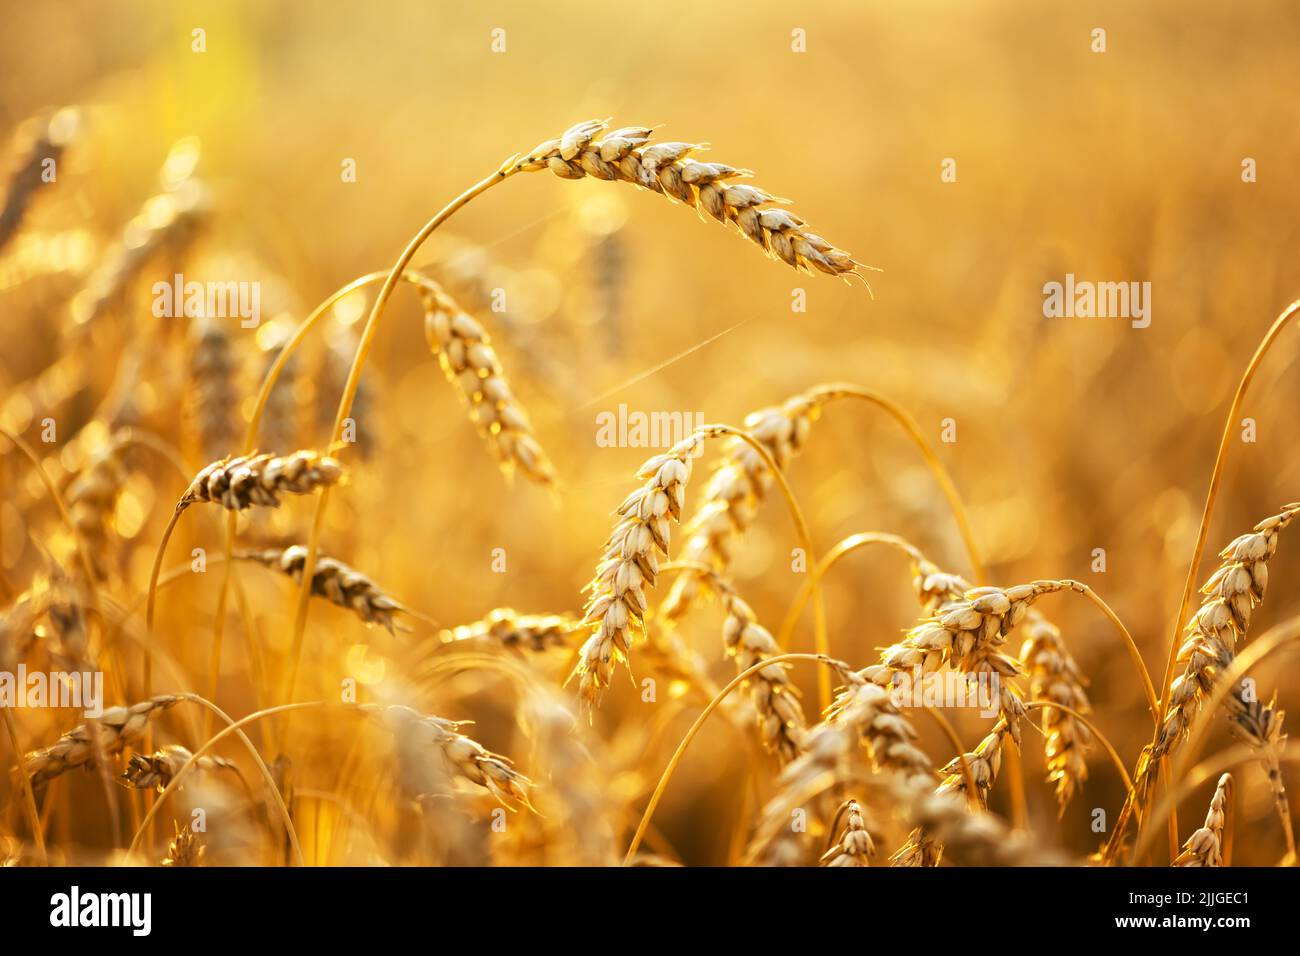 Des épillets de blé mûrs sur un champ doré illuminés par la lumière orange du coucher de soleil. Environnement industriel et naturel. Ukraine, Europe Banque D'Images